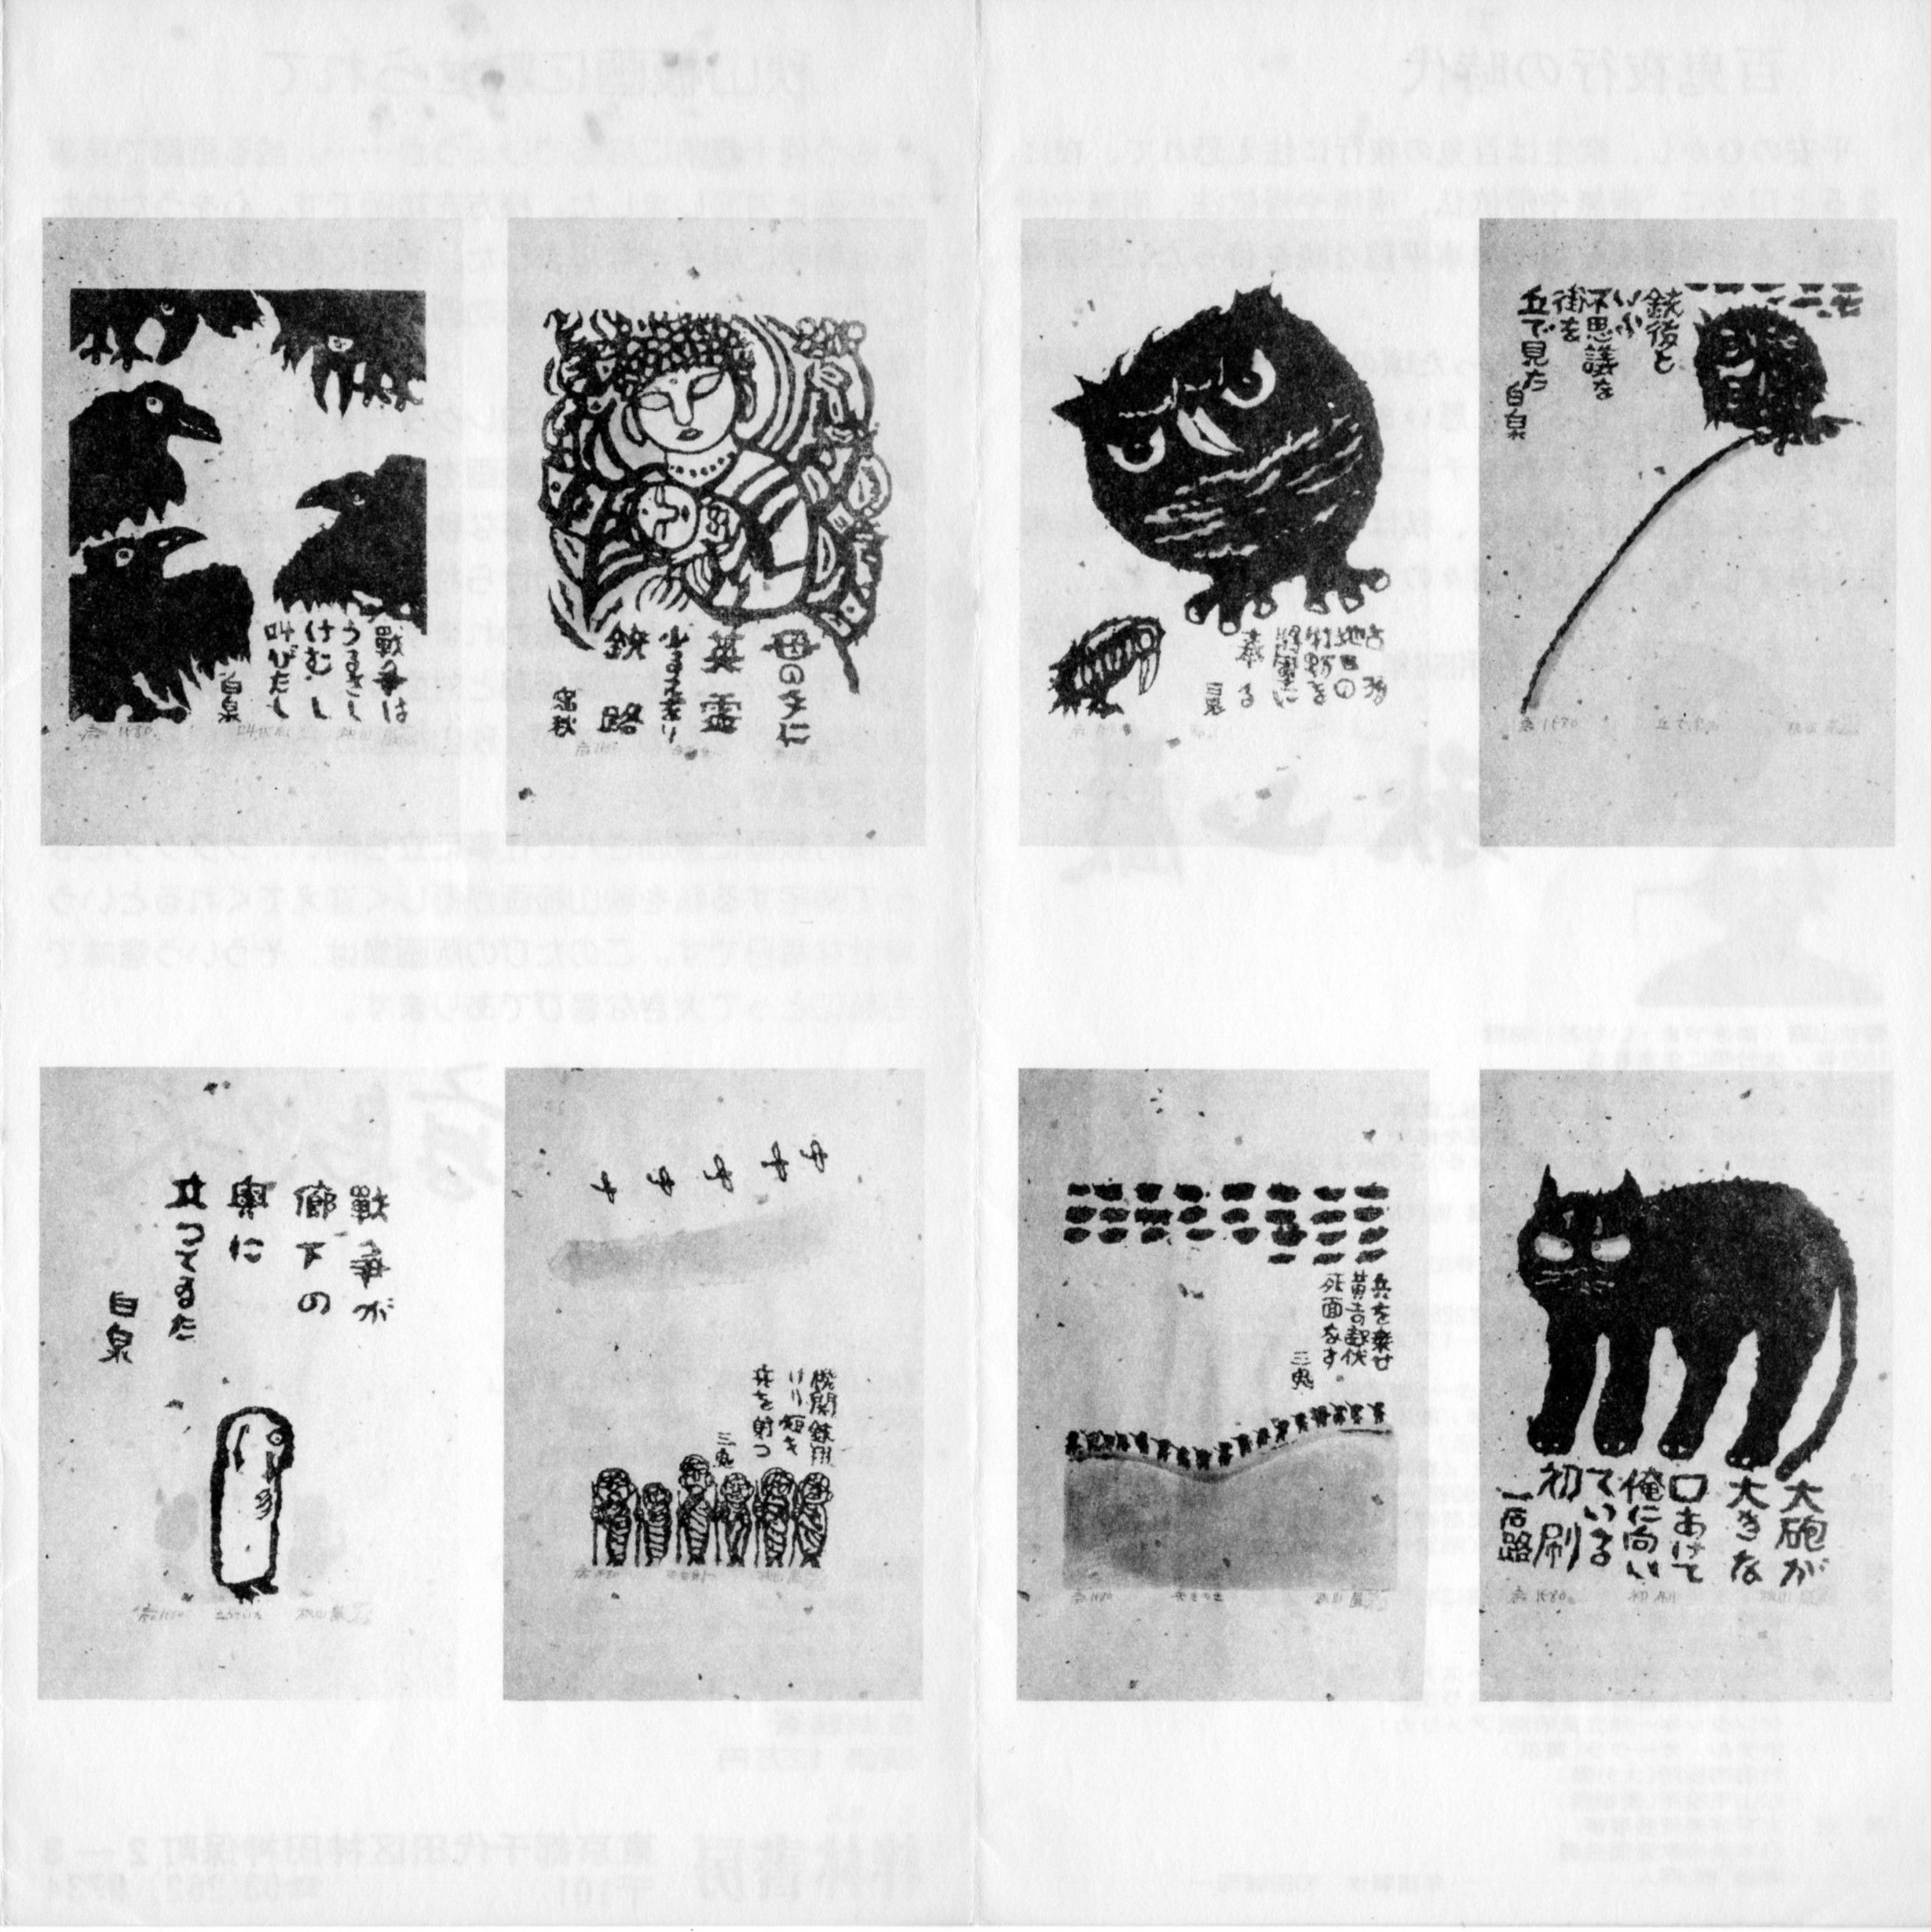 秋山巌版画集「さかしまに」作品8点 | 秋山巌の小さな美術館 